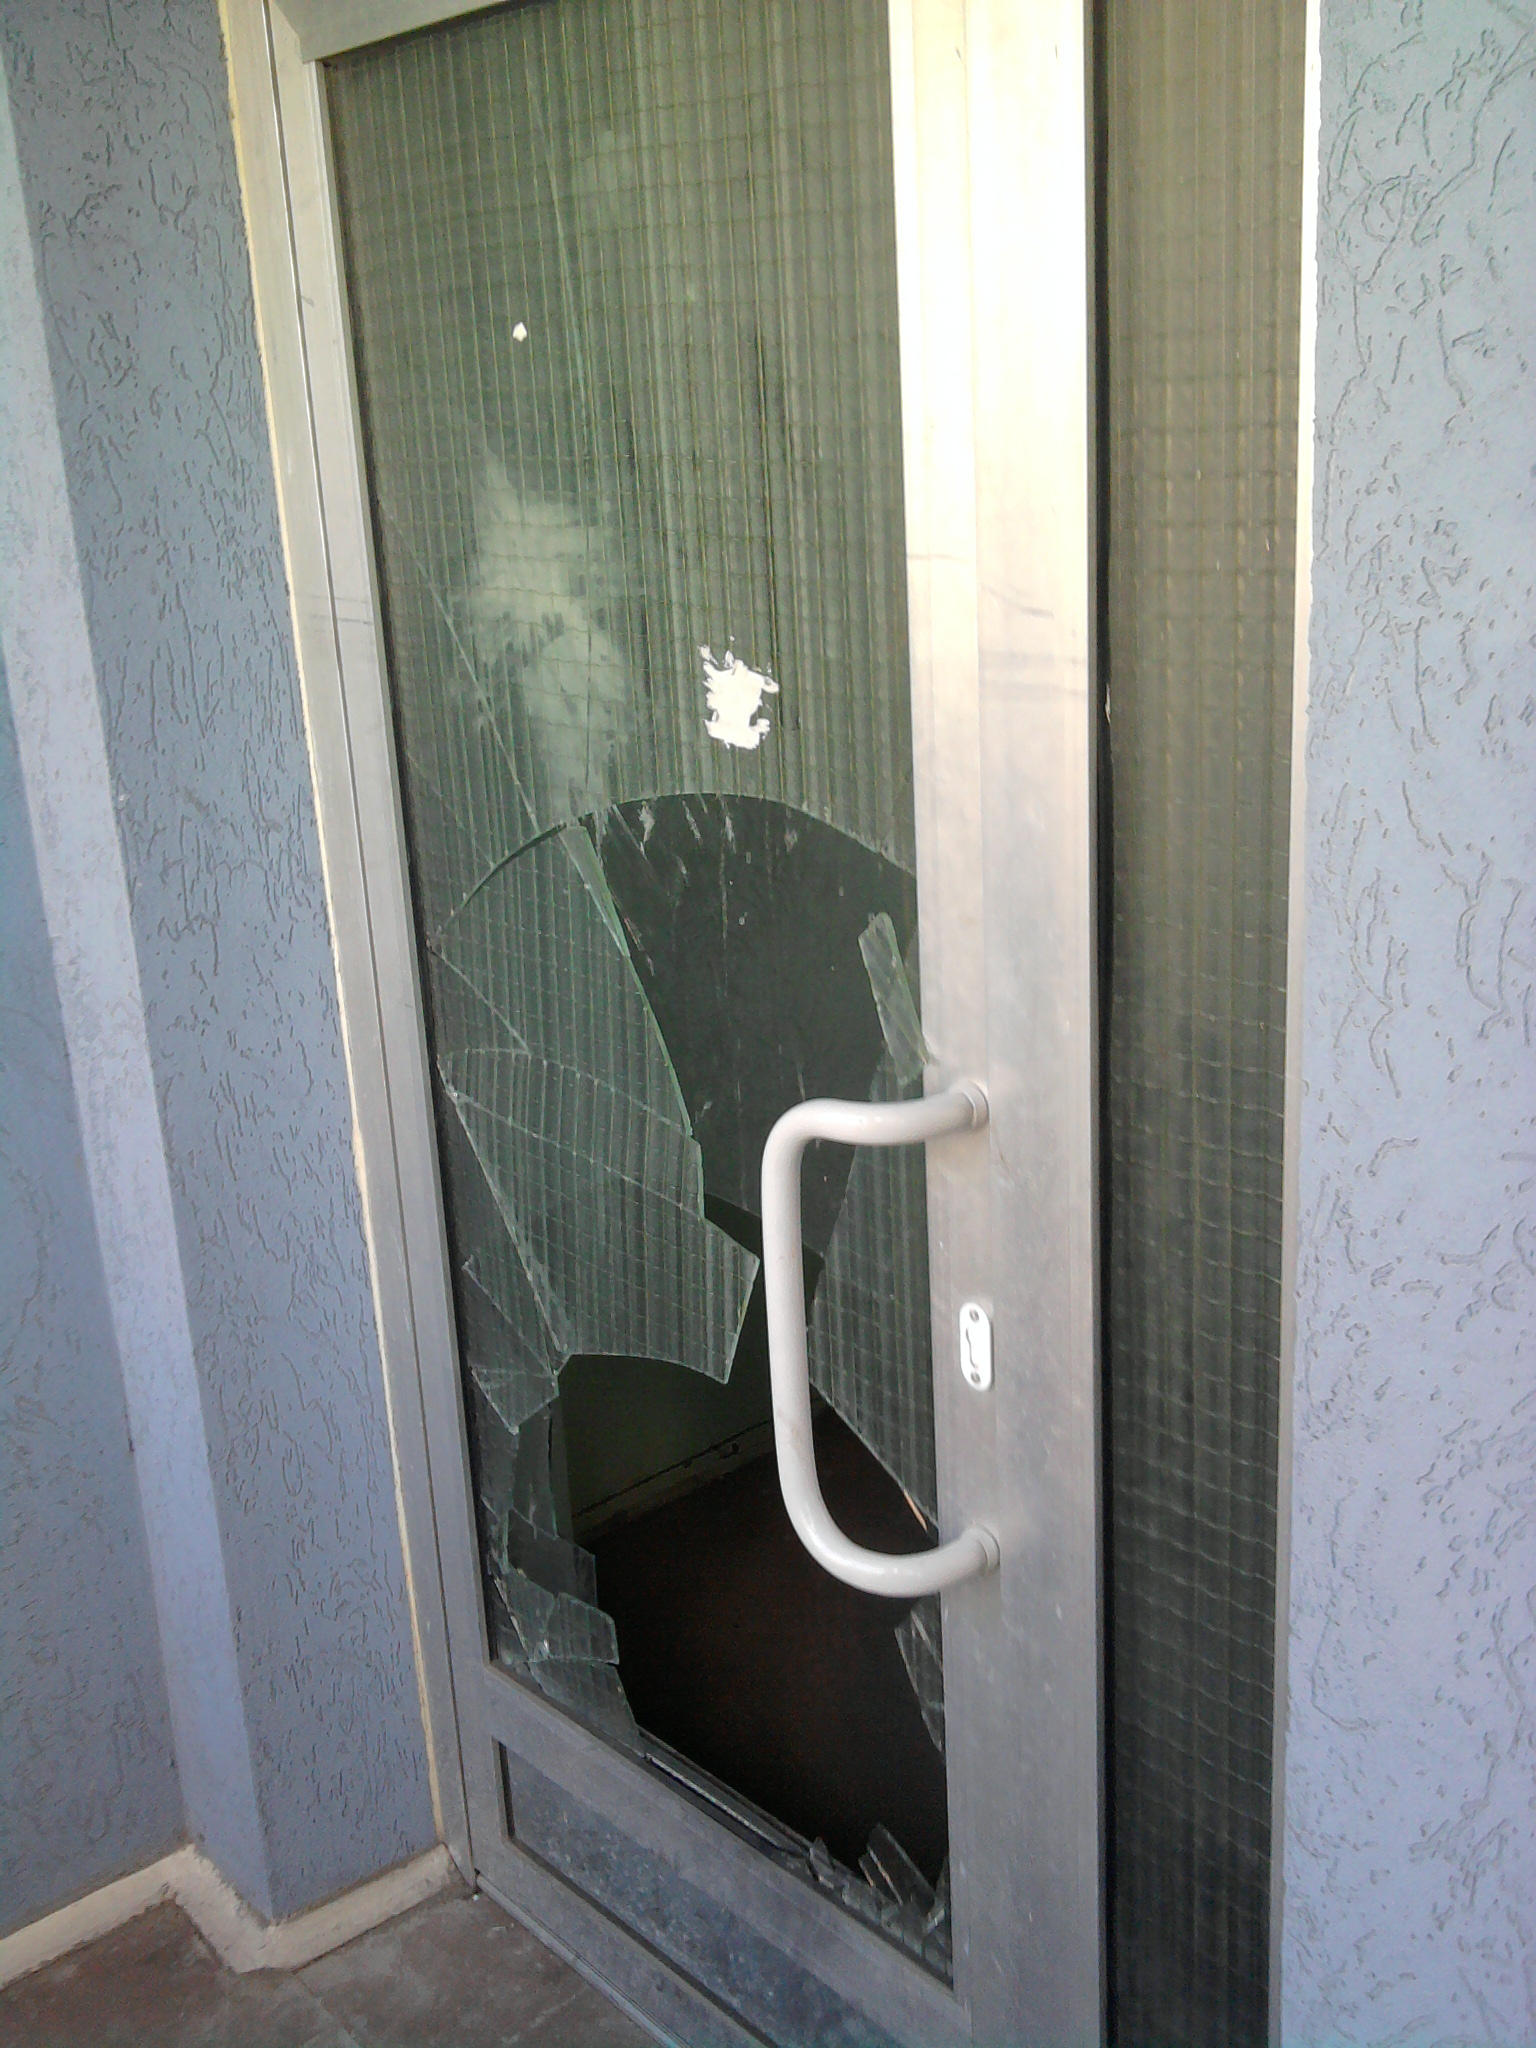 Разбили стекло на двери. Разбитое стекло в двери. Разбитая стеклянная дверь. Разбили стекло в двери. Входной двери разбилось стекло.